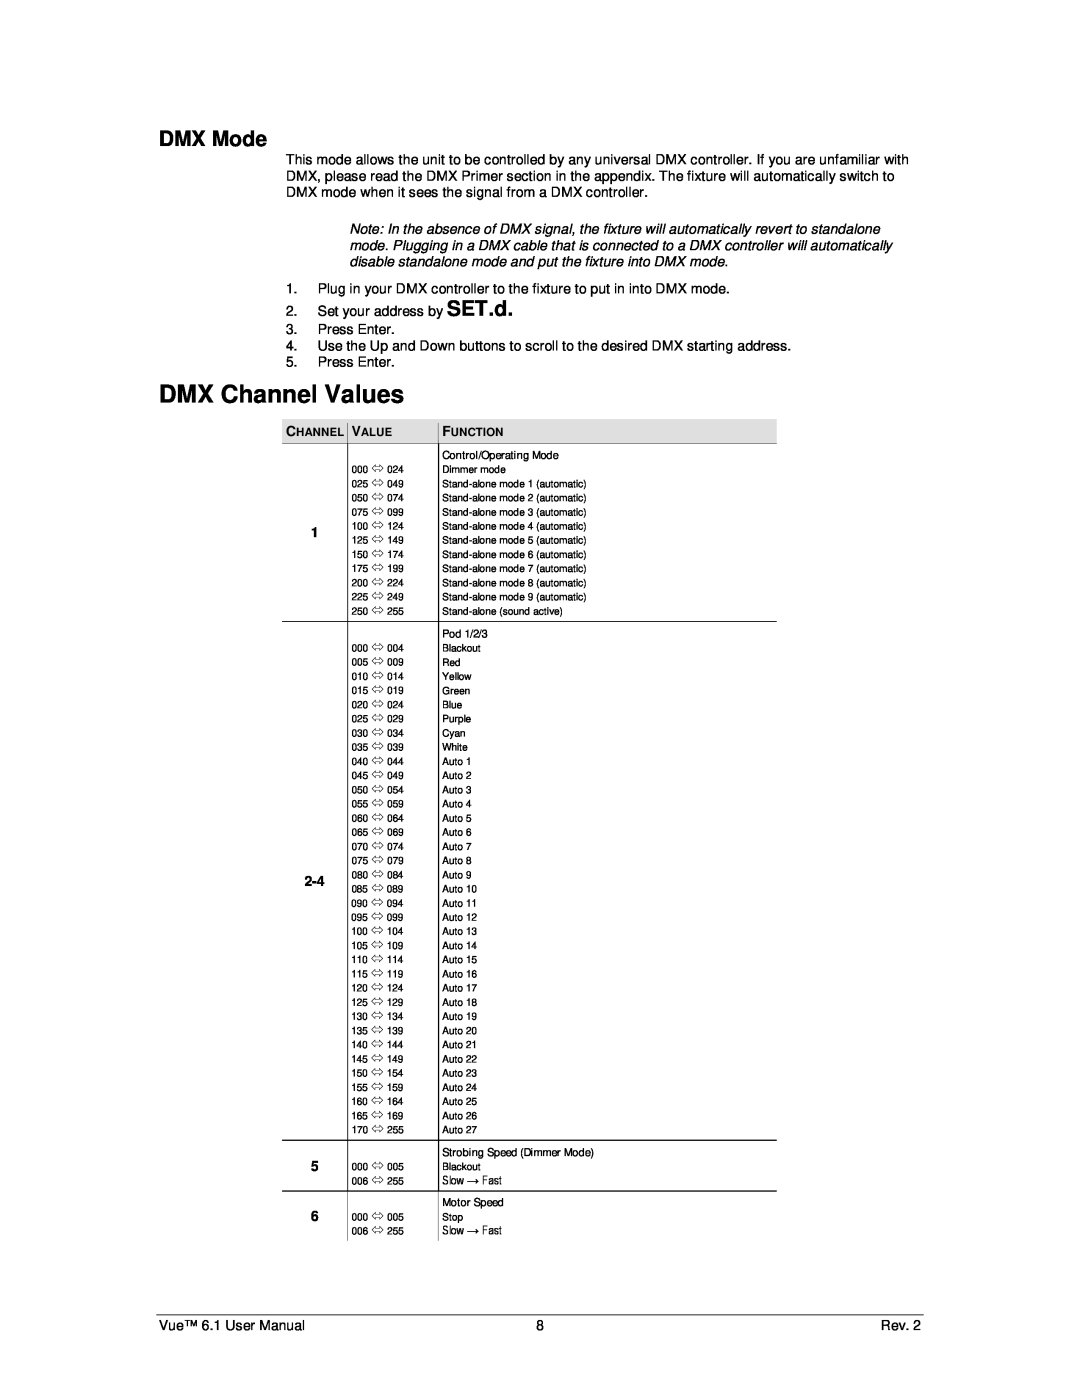 Chauvet 6.1 user manual DMX Channel Values, DMX Mode 